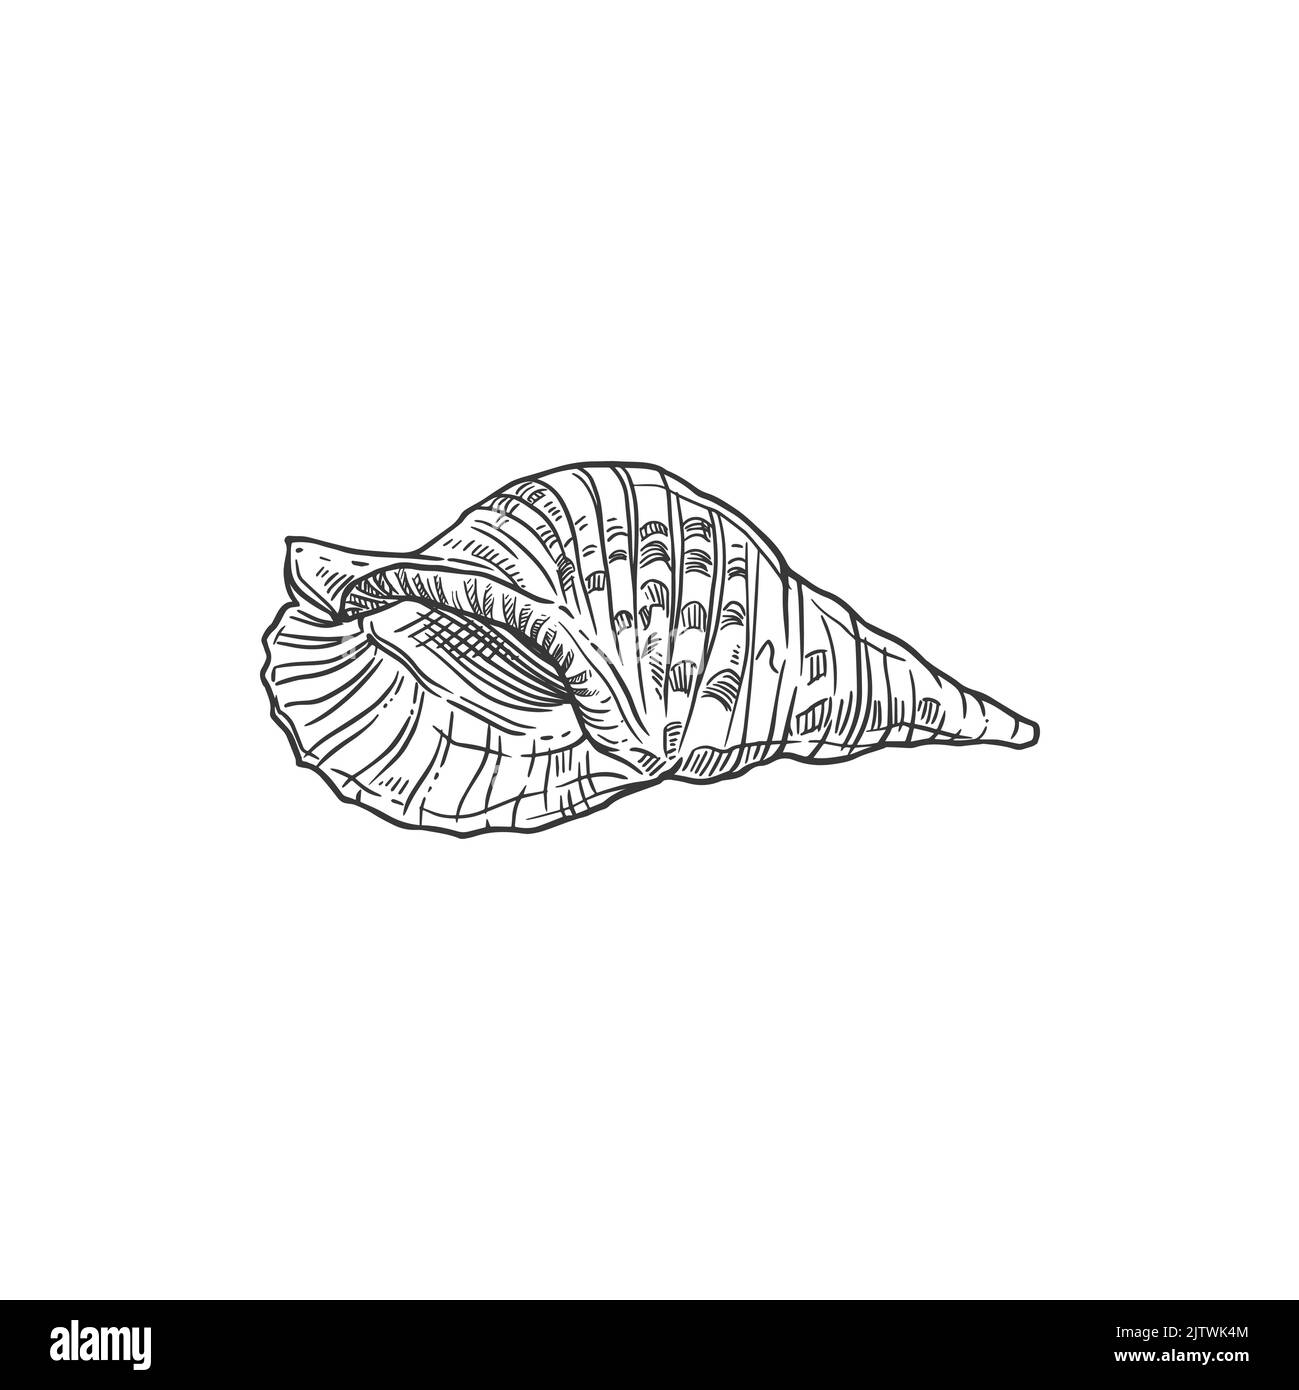 Skizze Meeresmuschel, Vektormuschel, gravierte Meeresmuschel oder Schalentiere. Karibische triton Muschel Unterwasser handgezeichnete Molluske isoliert Design-Element auf weißem Hintergrund Stock Vektor